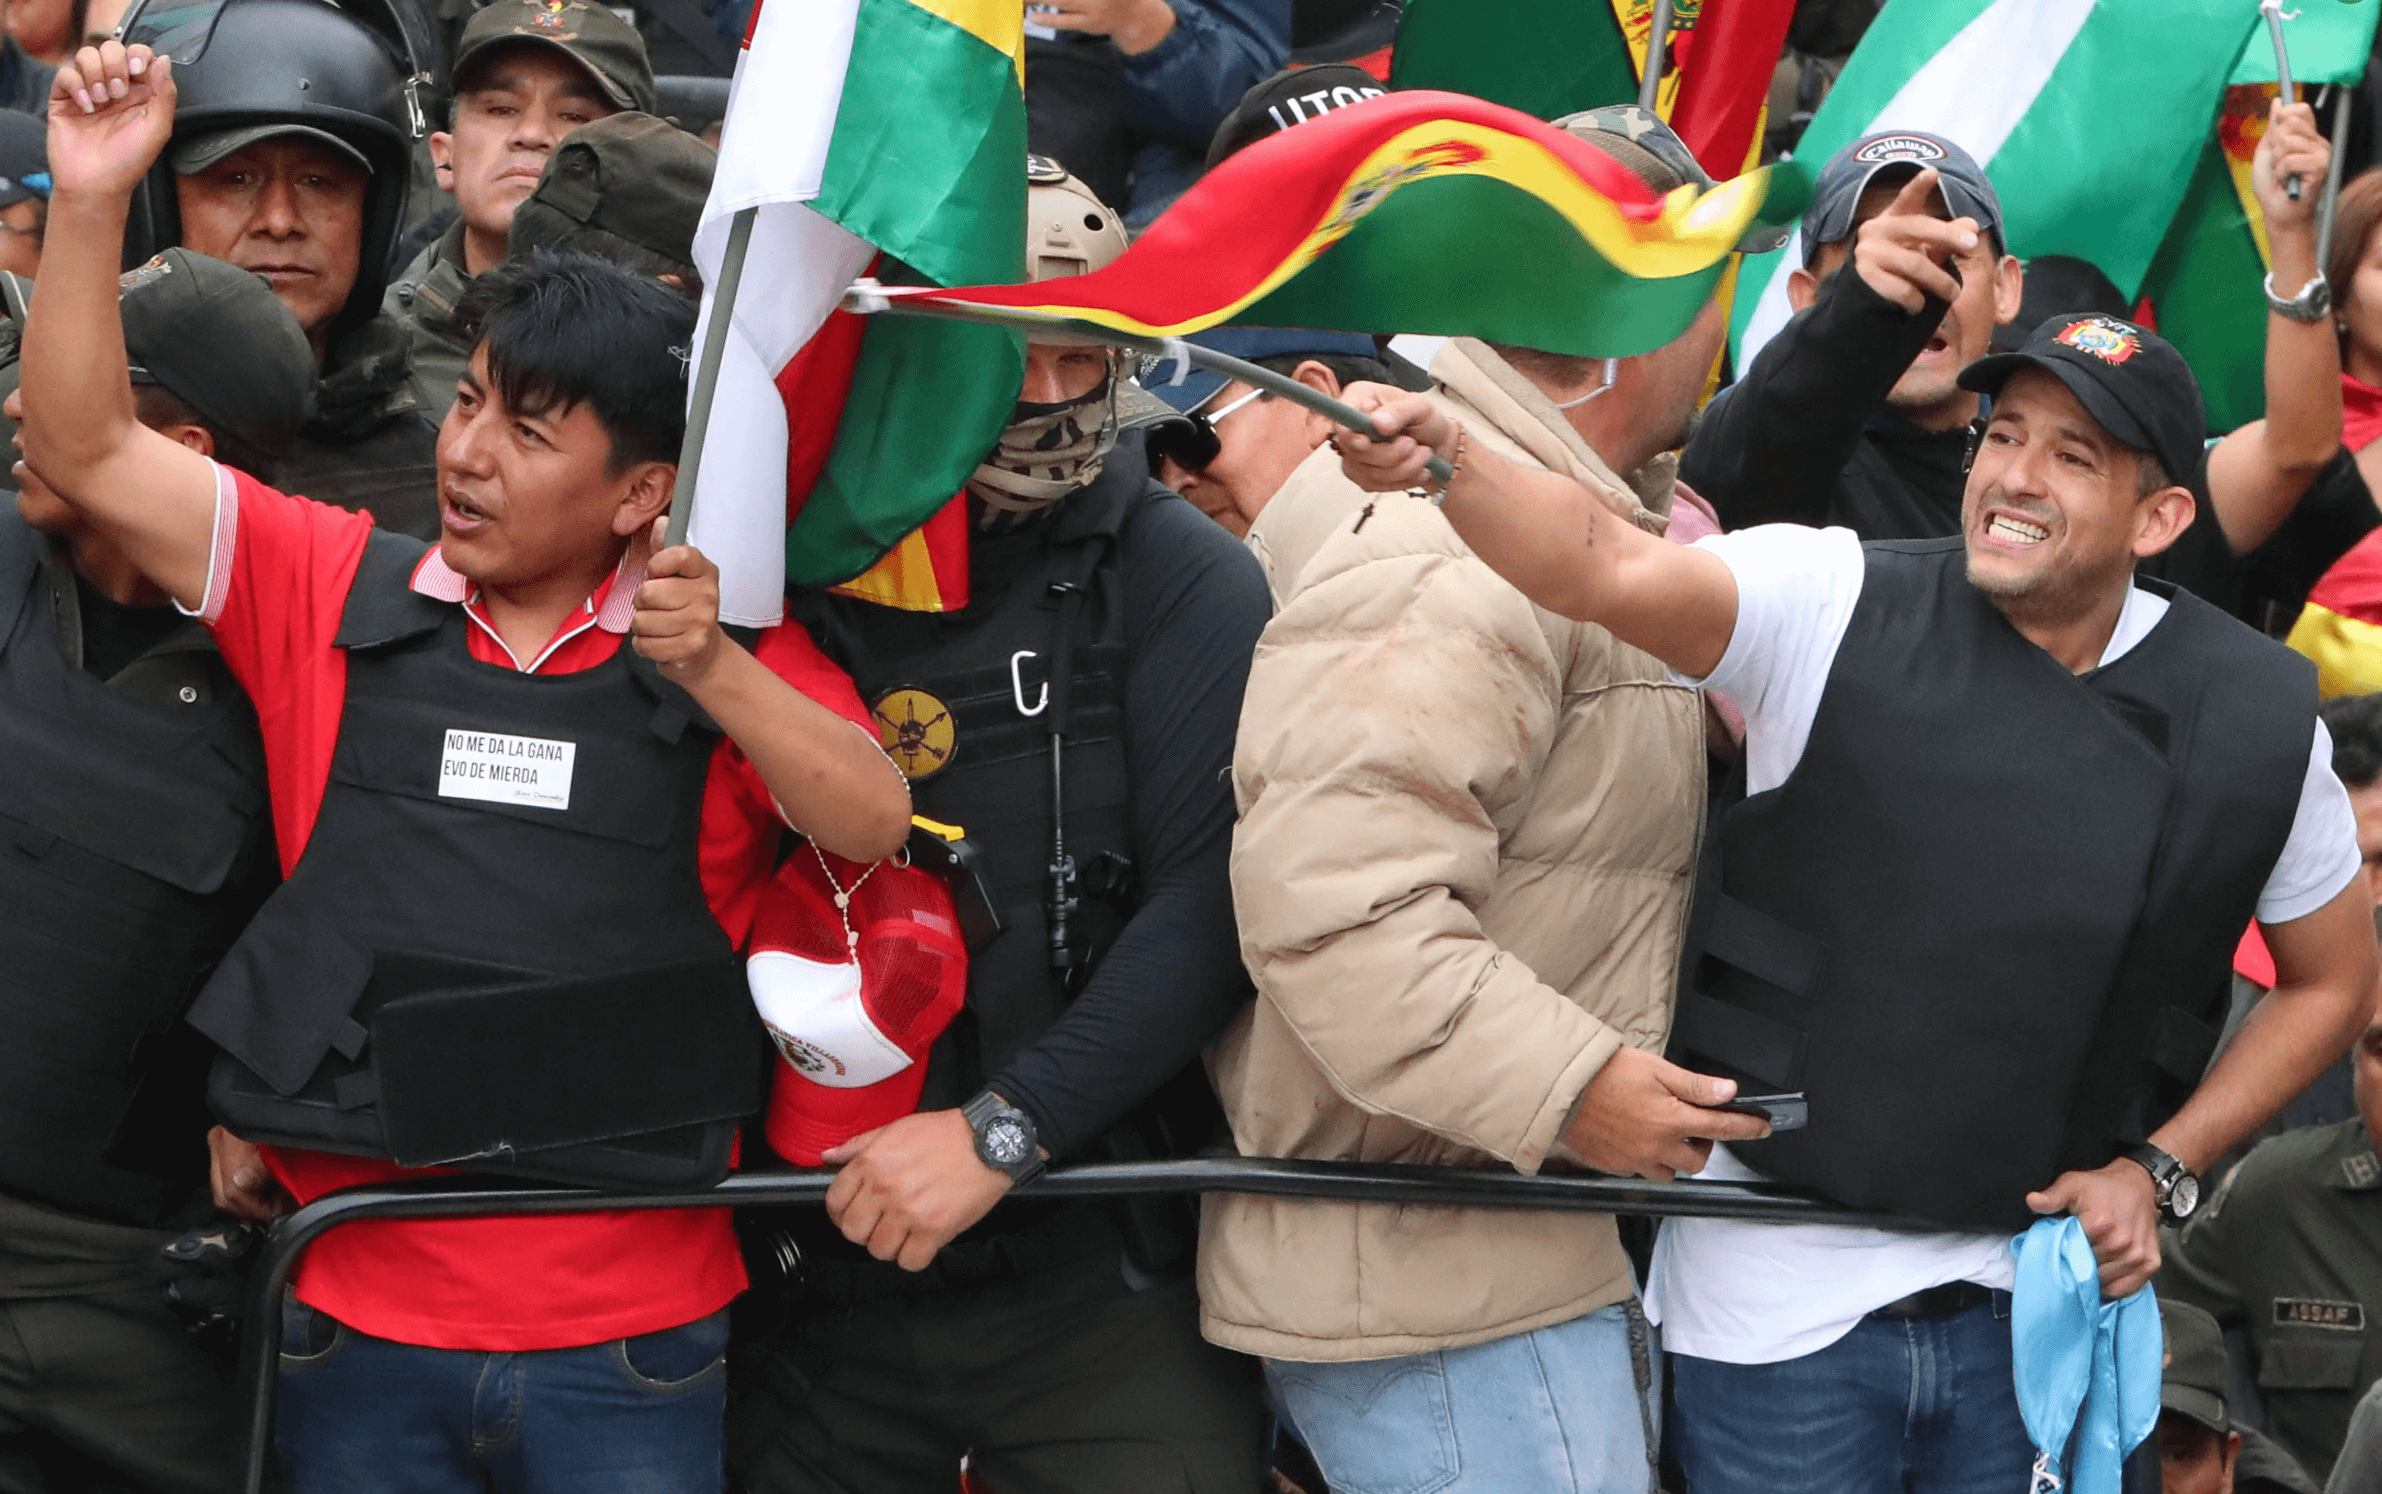 Líder autoritario de Bolivia renuncia luego de protestas masivas motivadas por elección fraudulenta